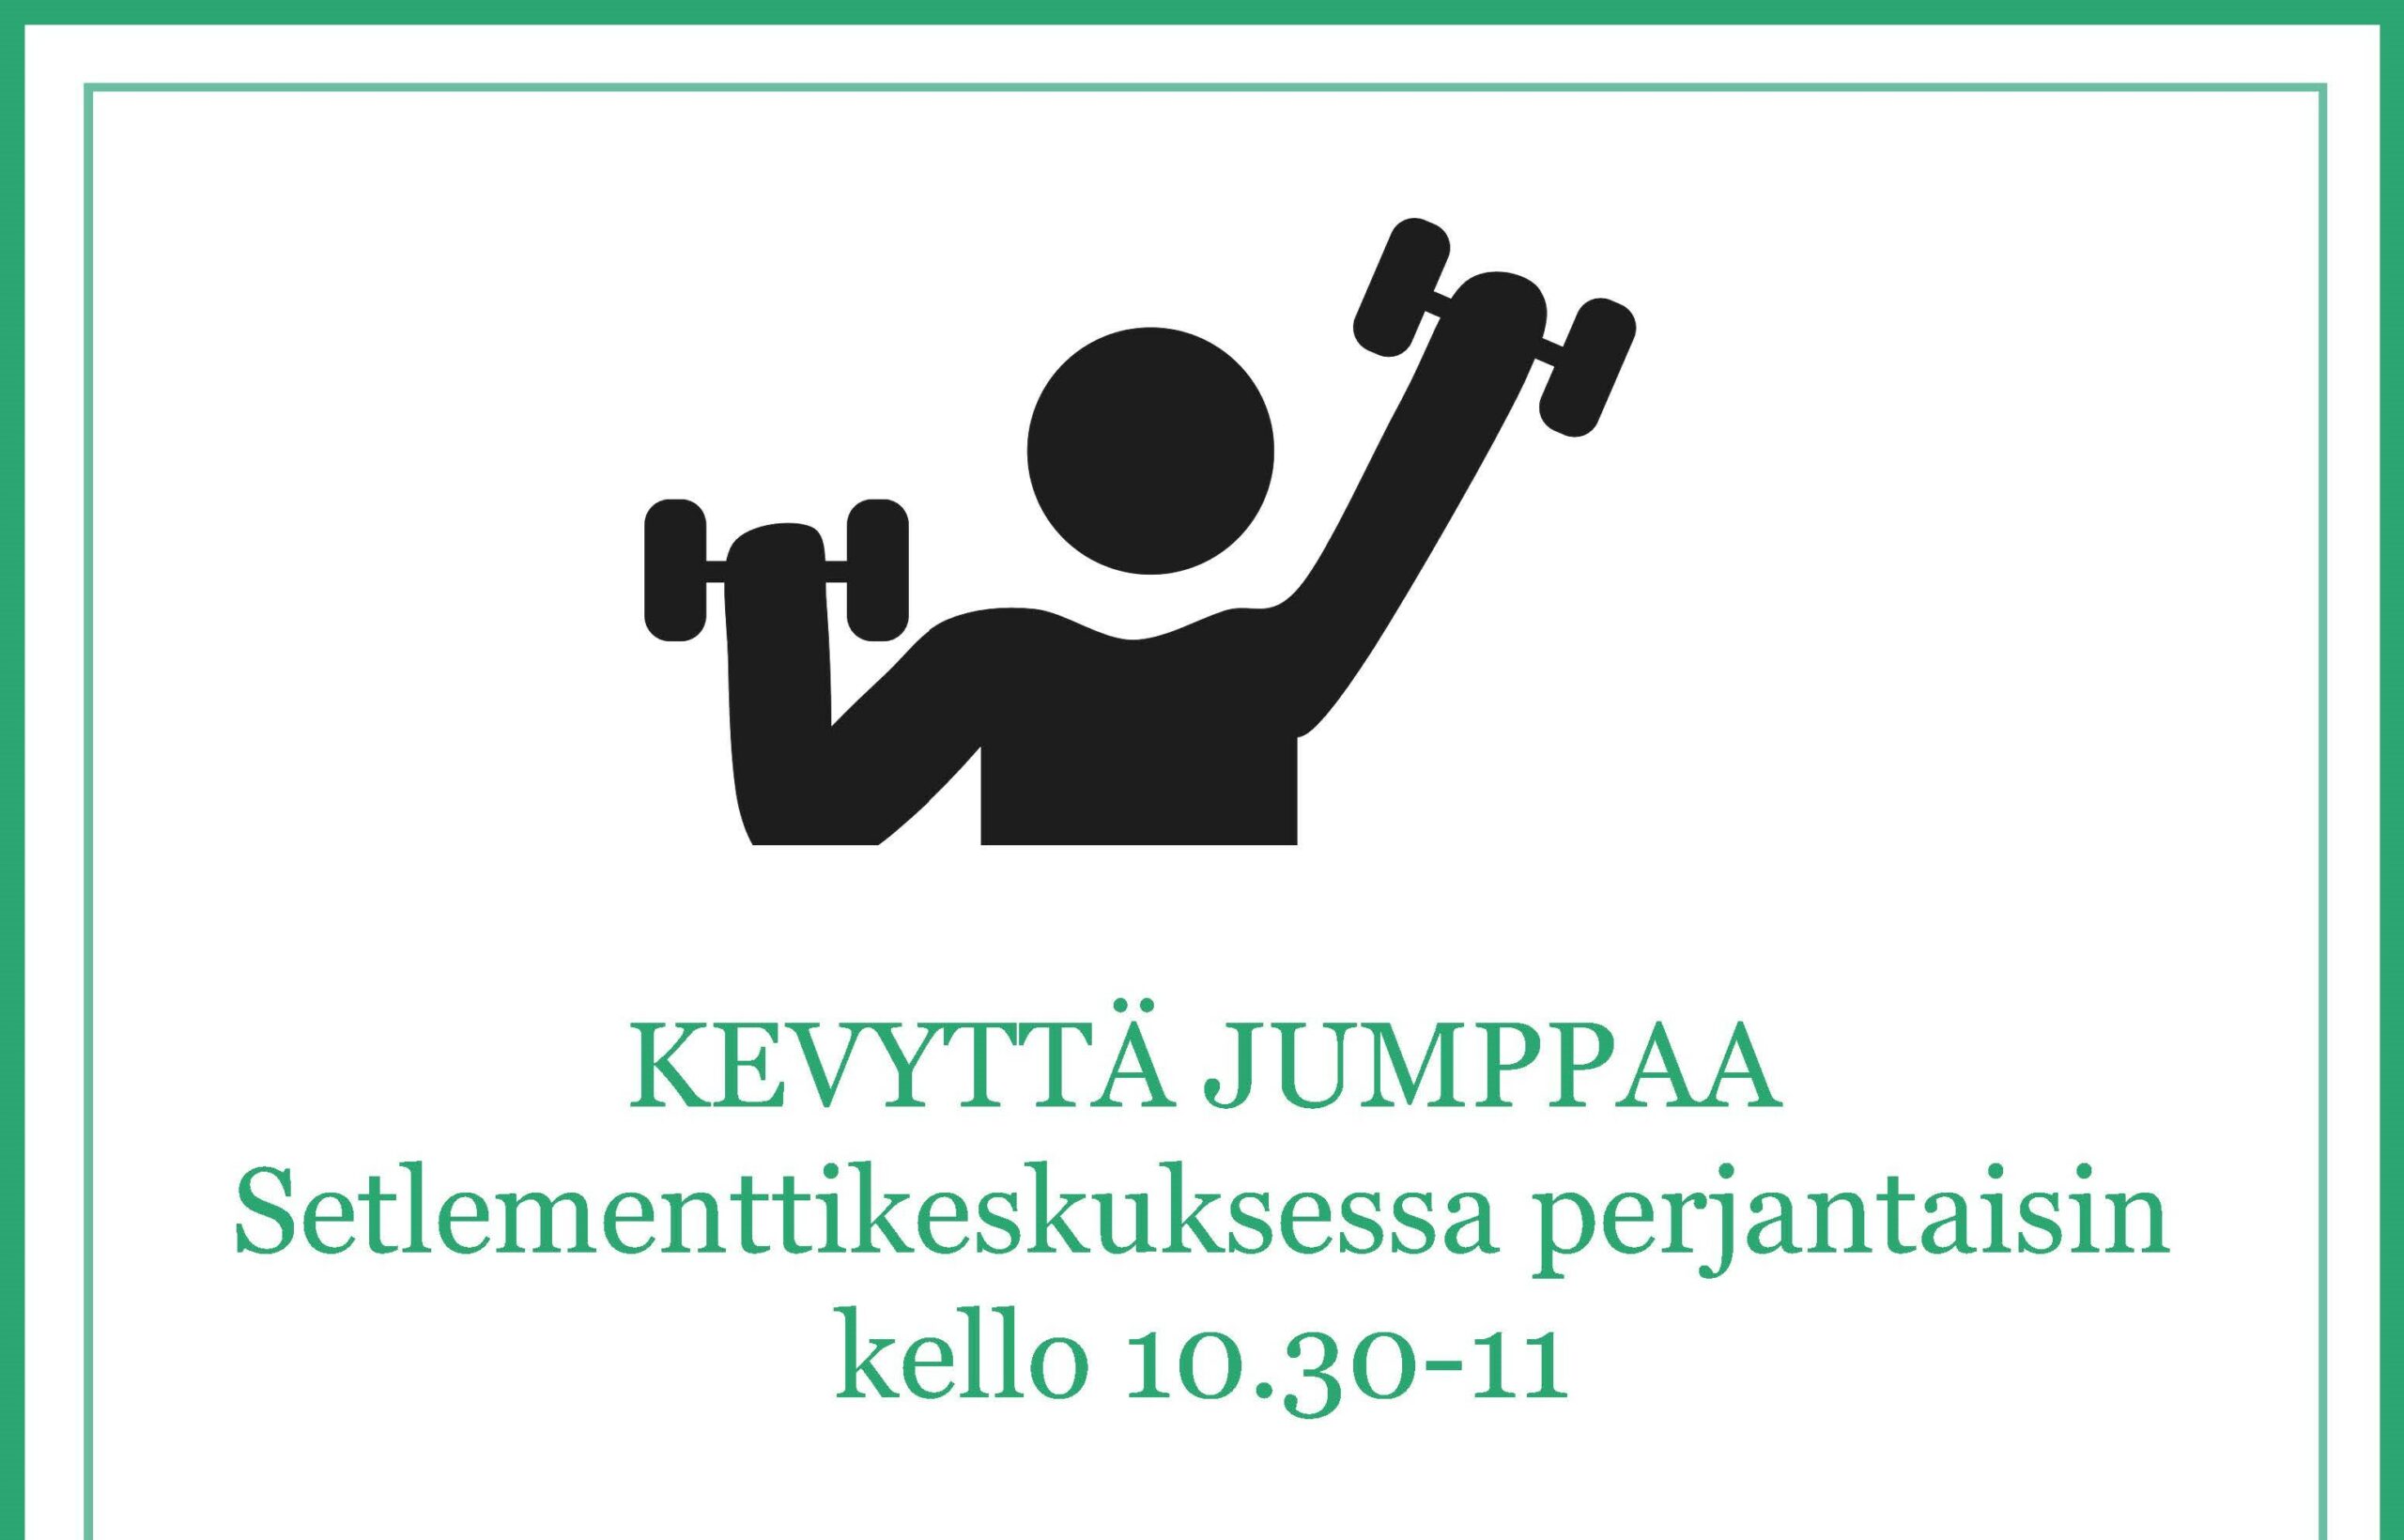 Mainos Kevyttä jumppaa -liikuntahetkestä.